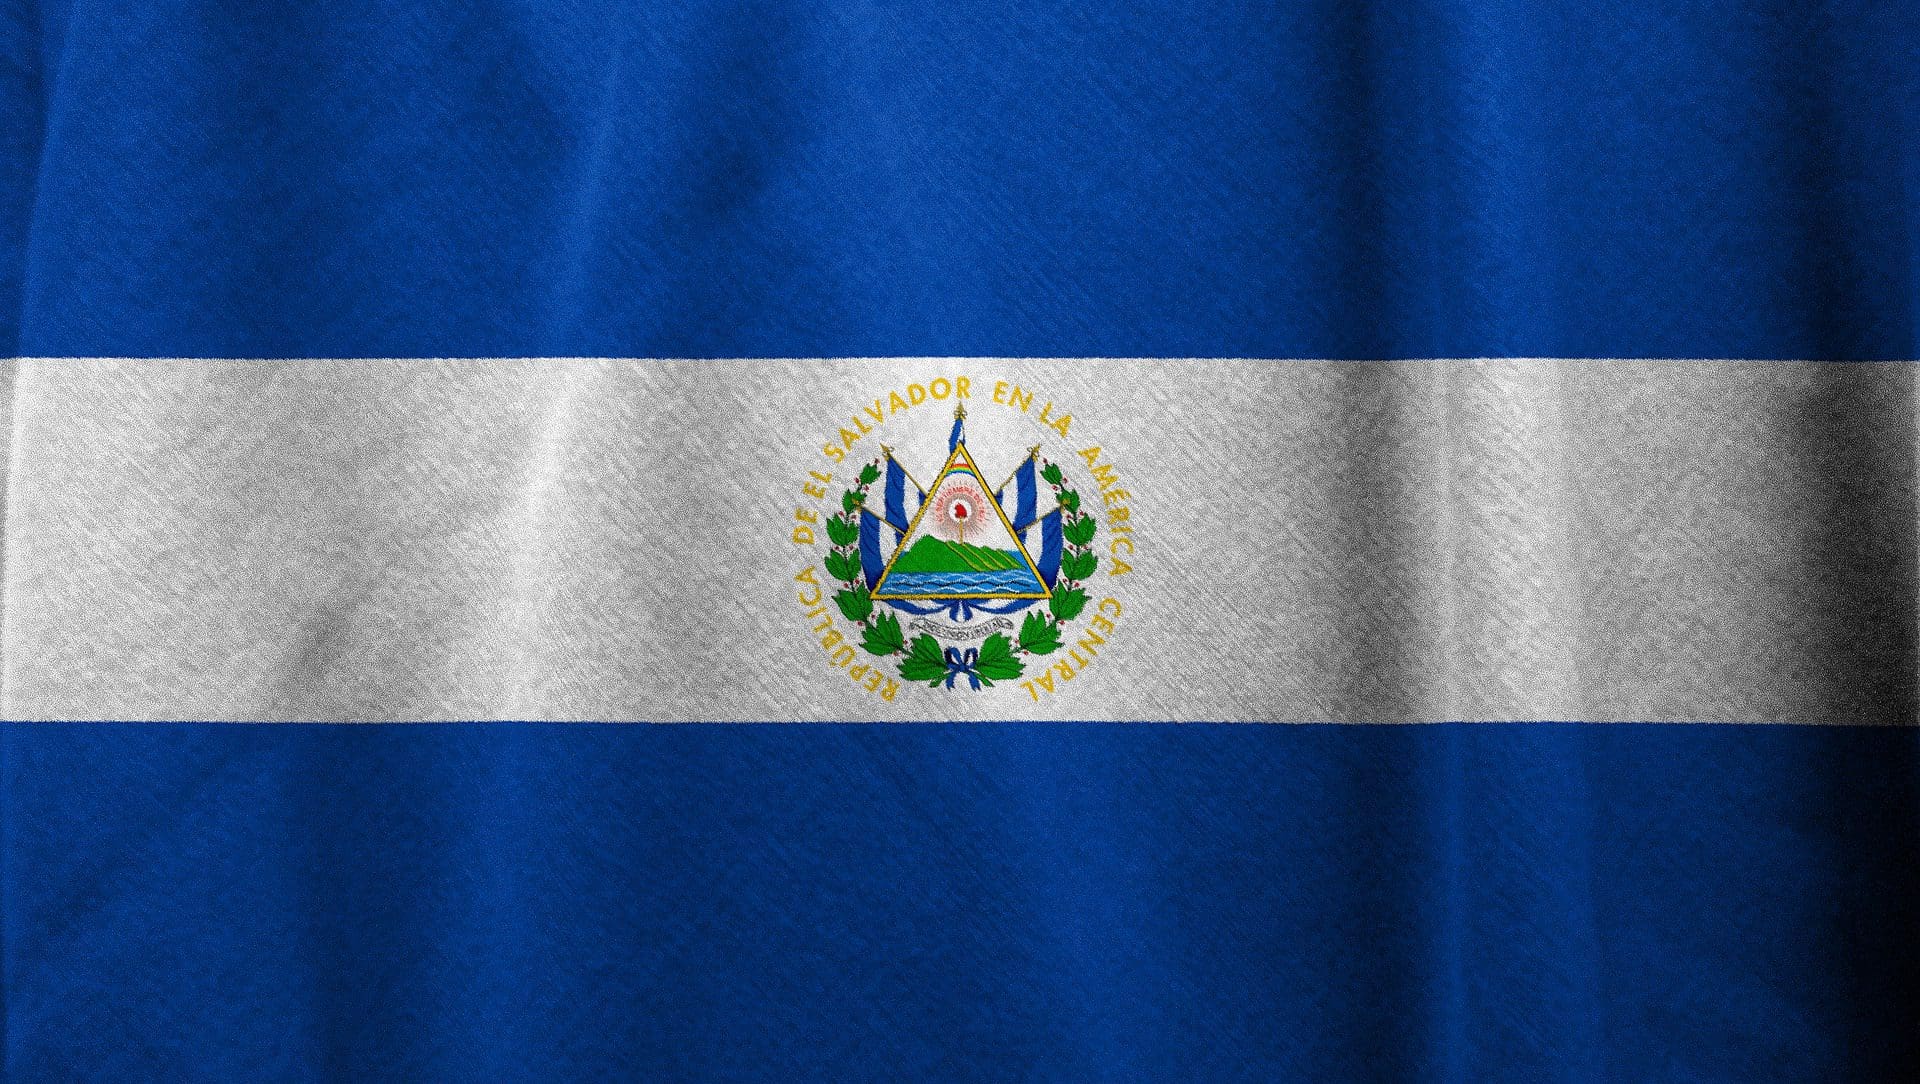 El Salvador: Bitcoin Bond in arrivo